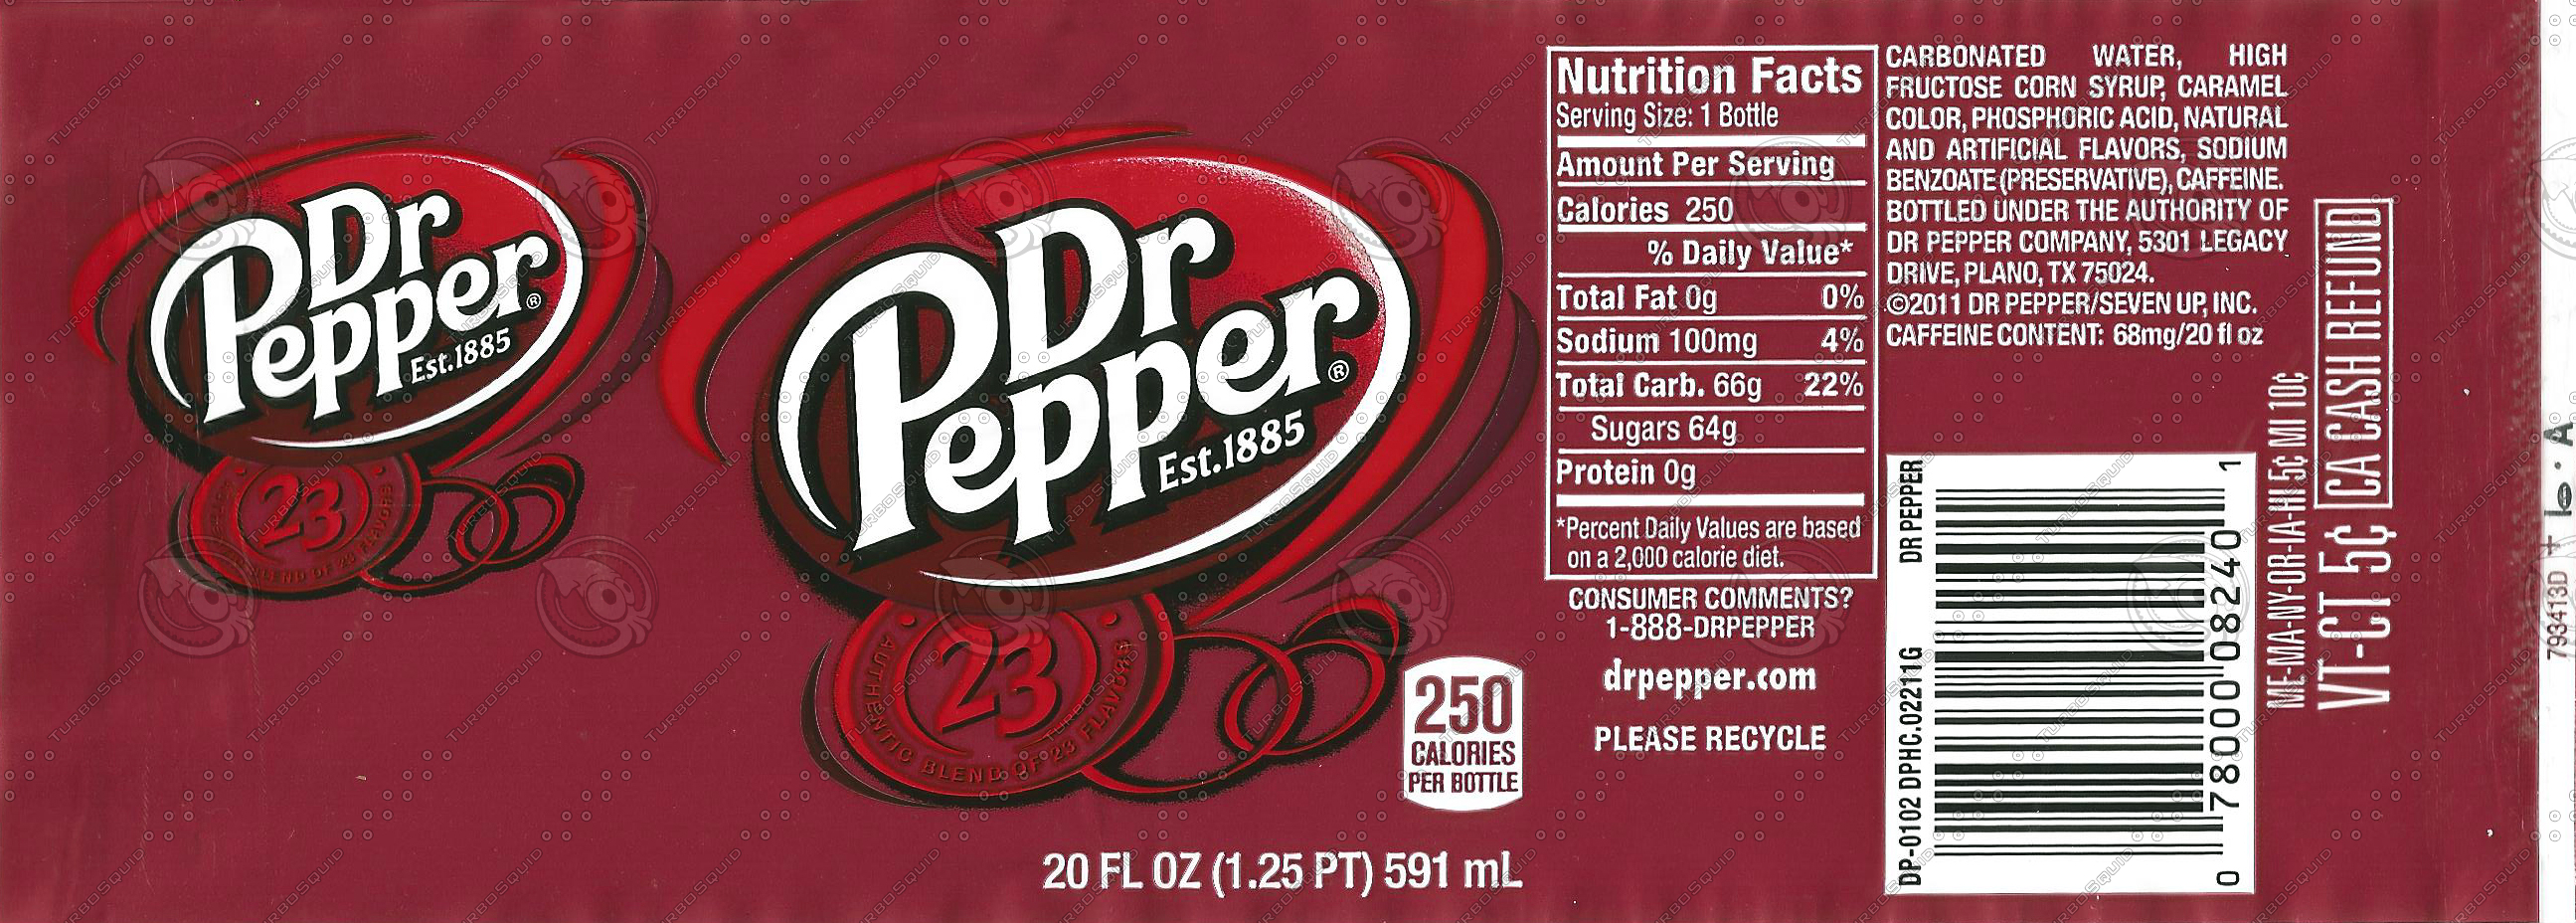 Pepper состав. Доктор Пеппер этикетка. Этикетка банки газировки Dr Pepper. Доктор Пеппер развертка. Доктор Пеппер срок годности.